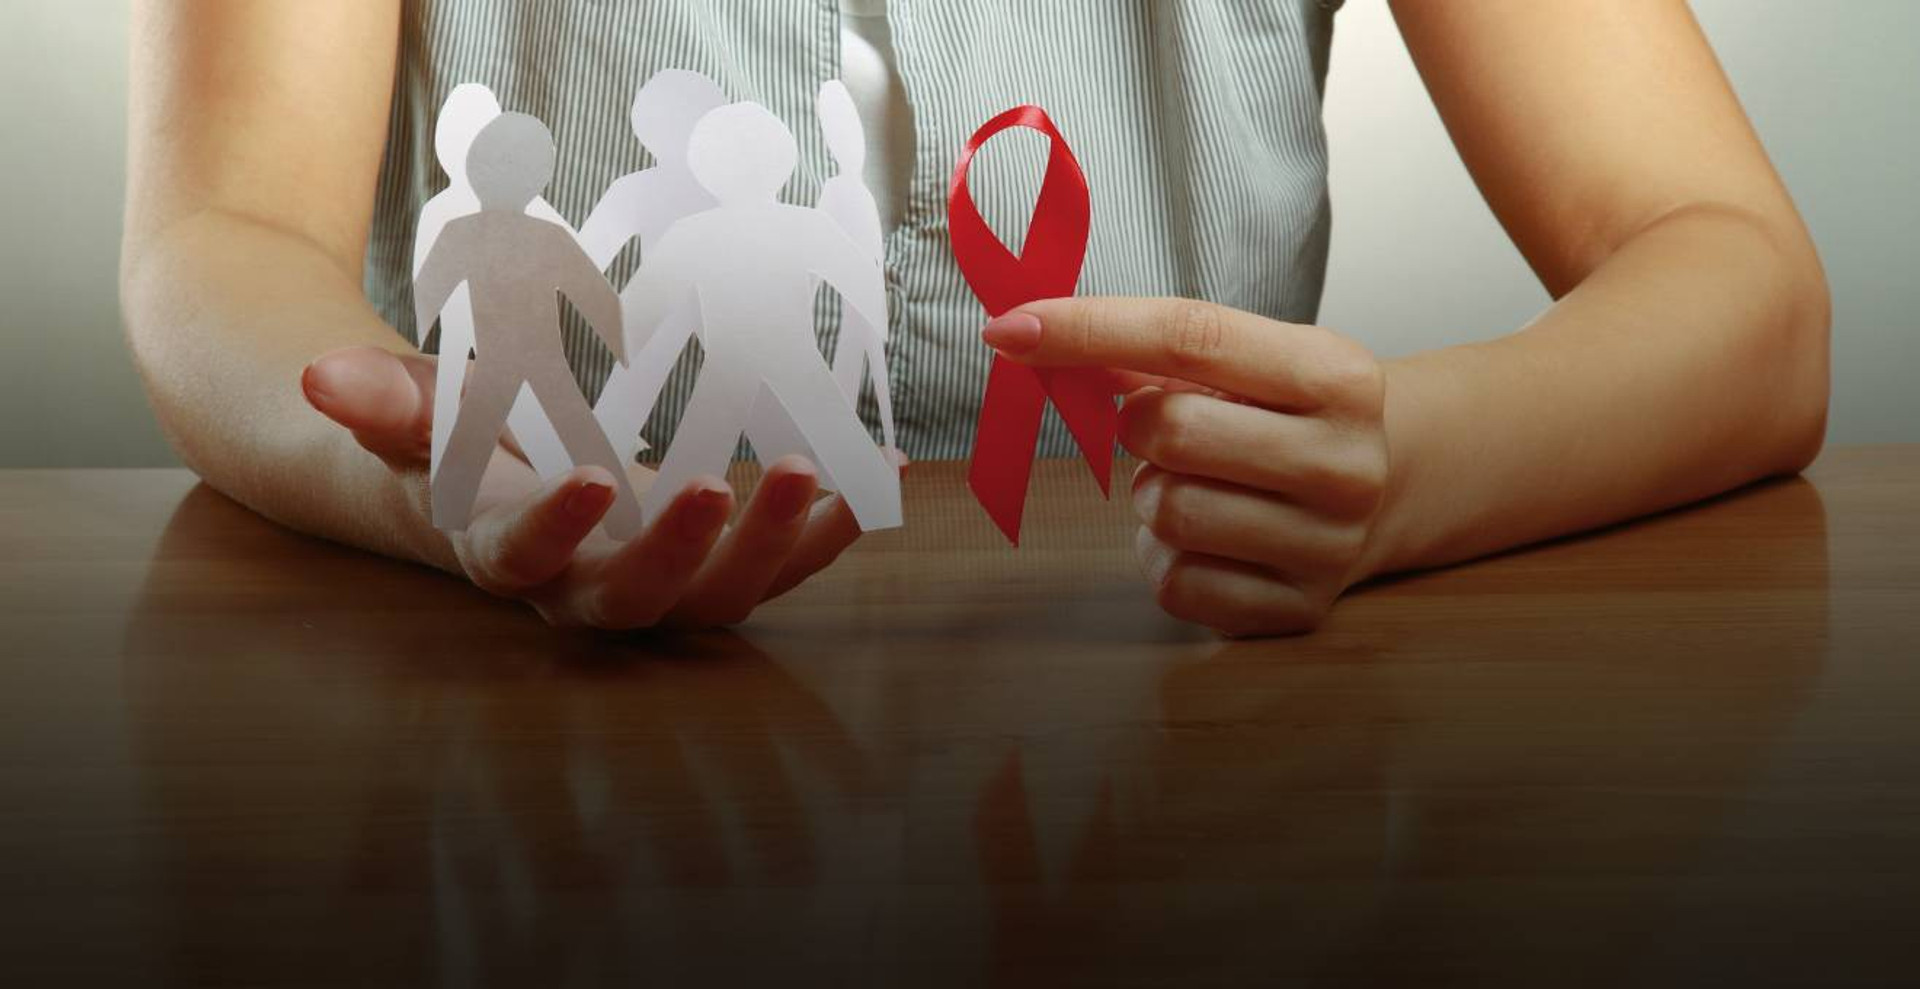 Я така народилася: дві історії підлітків про прийняття ВІЛ-позитивного статусу 